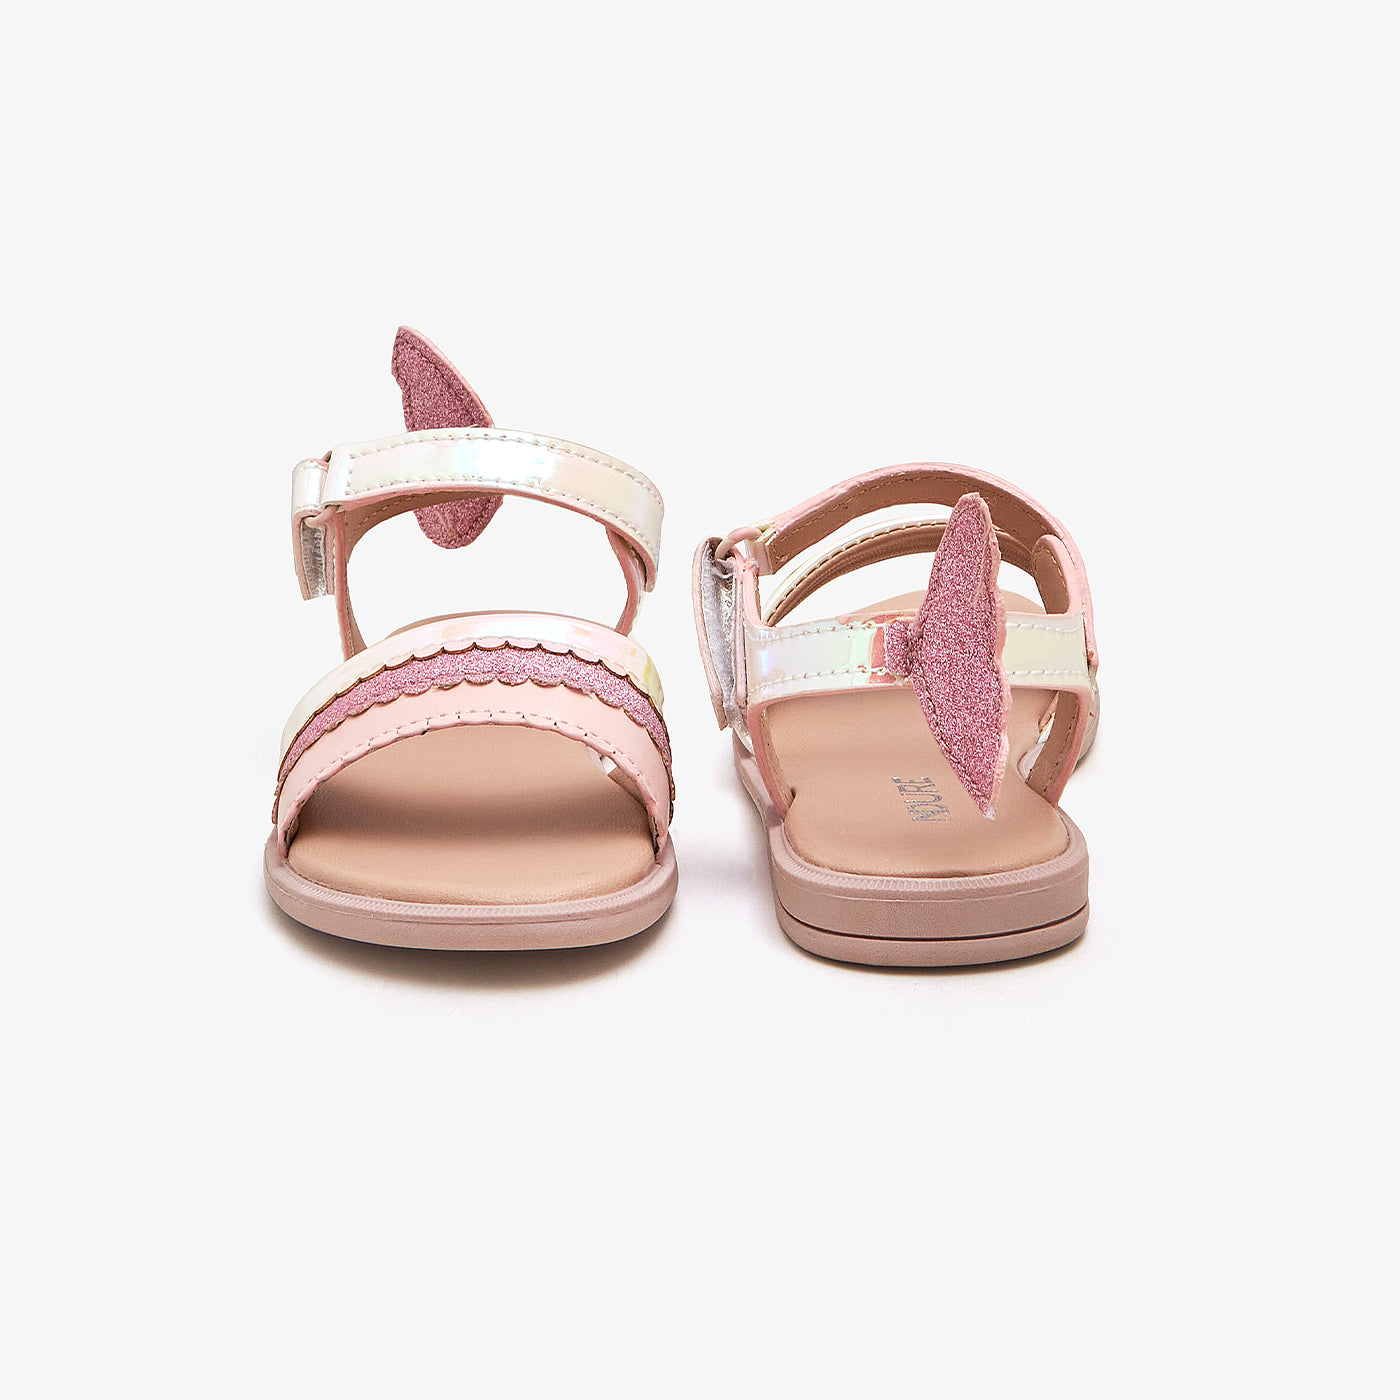 Girls' Summery Sandals